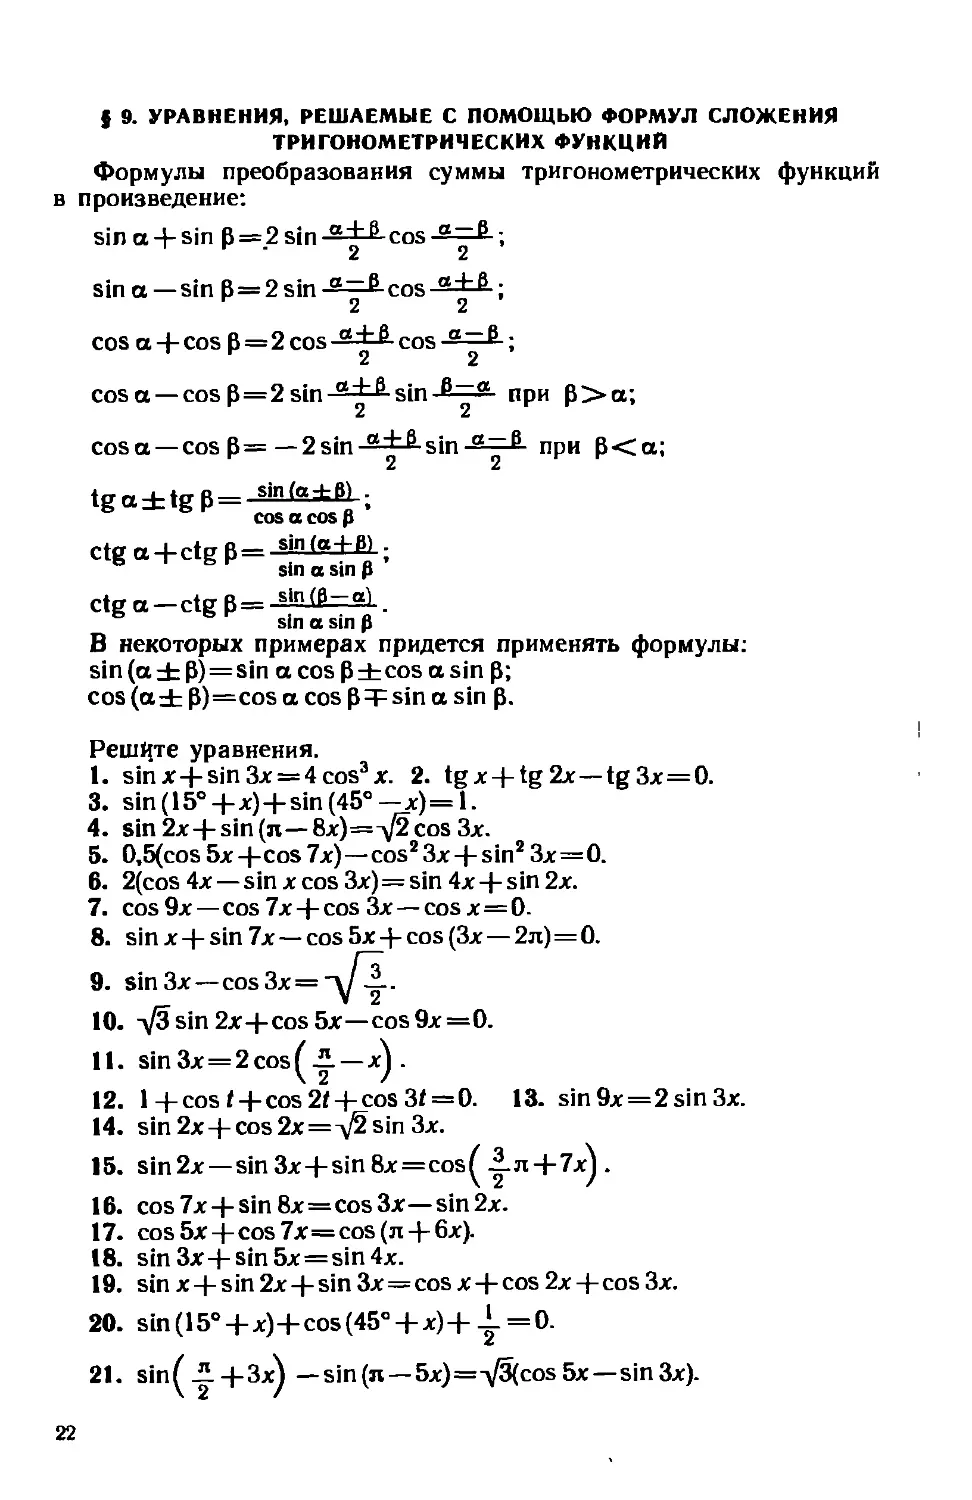 § 9. Уравнения, решаемые с помощью формул сложения тригонометрических функций